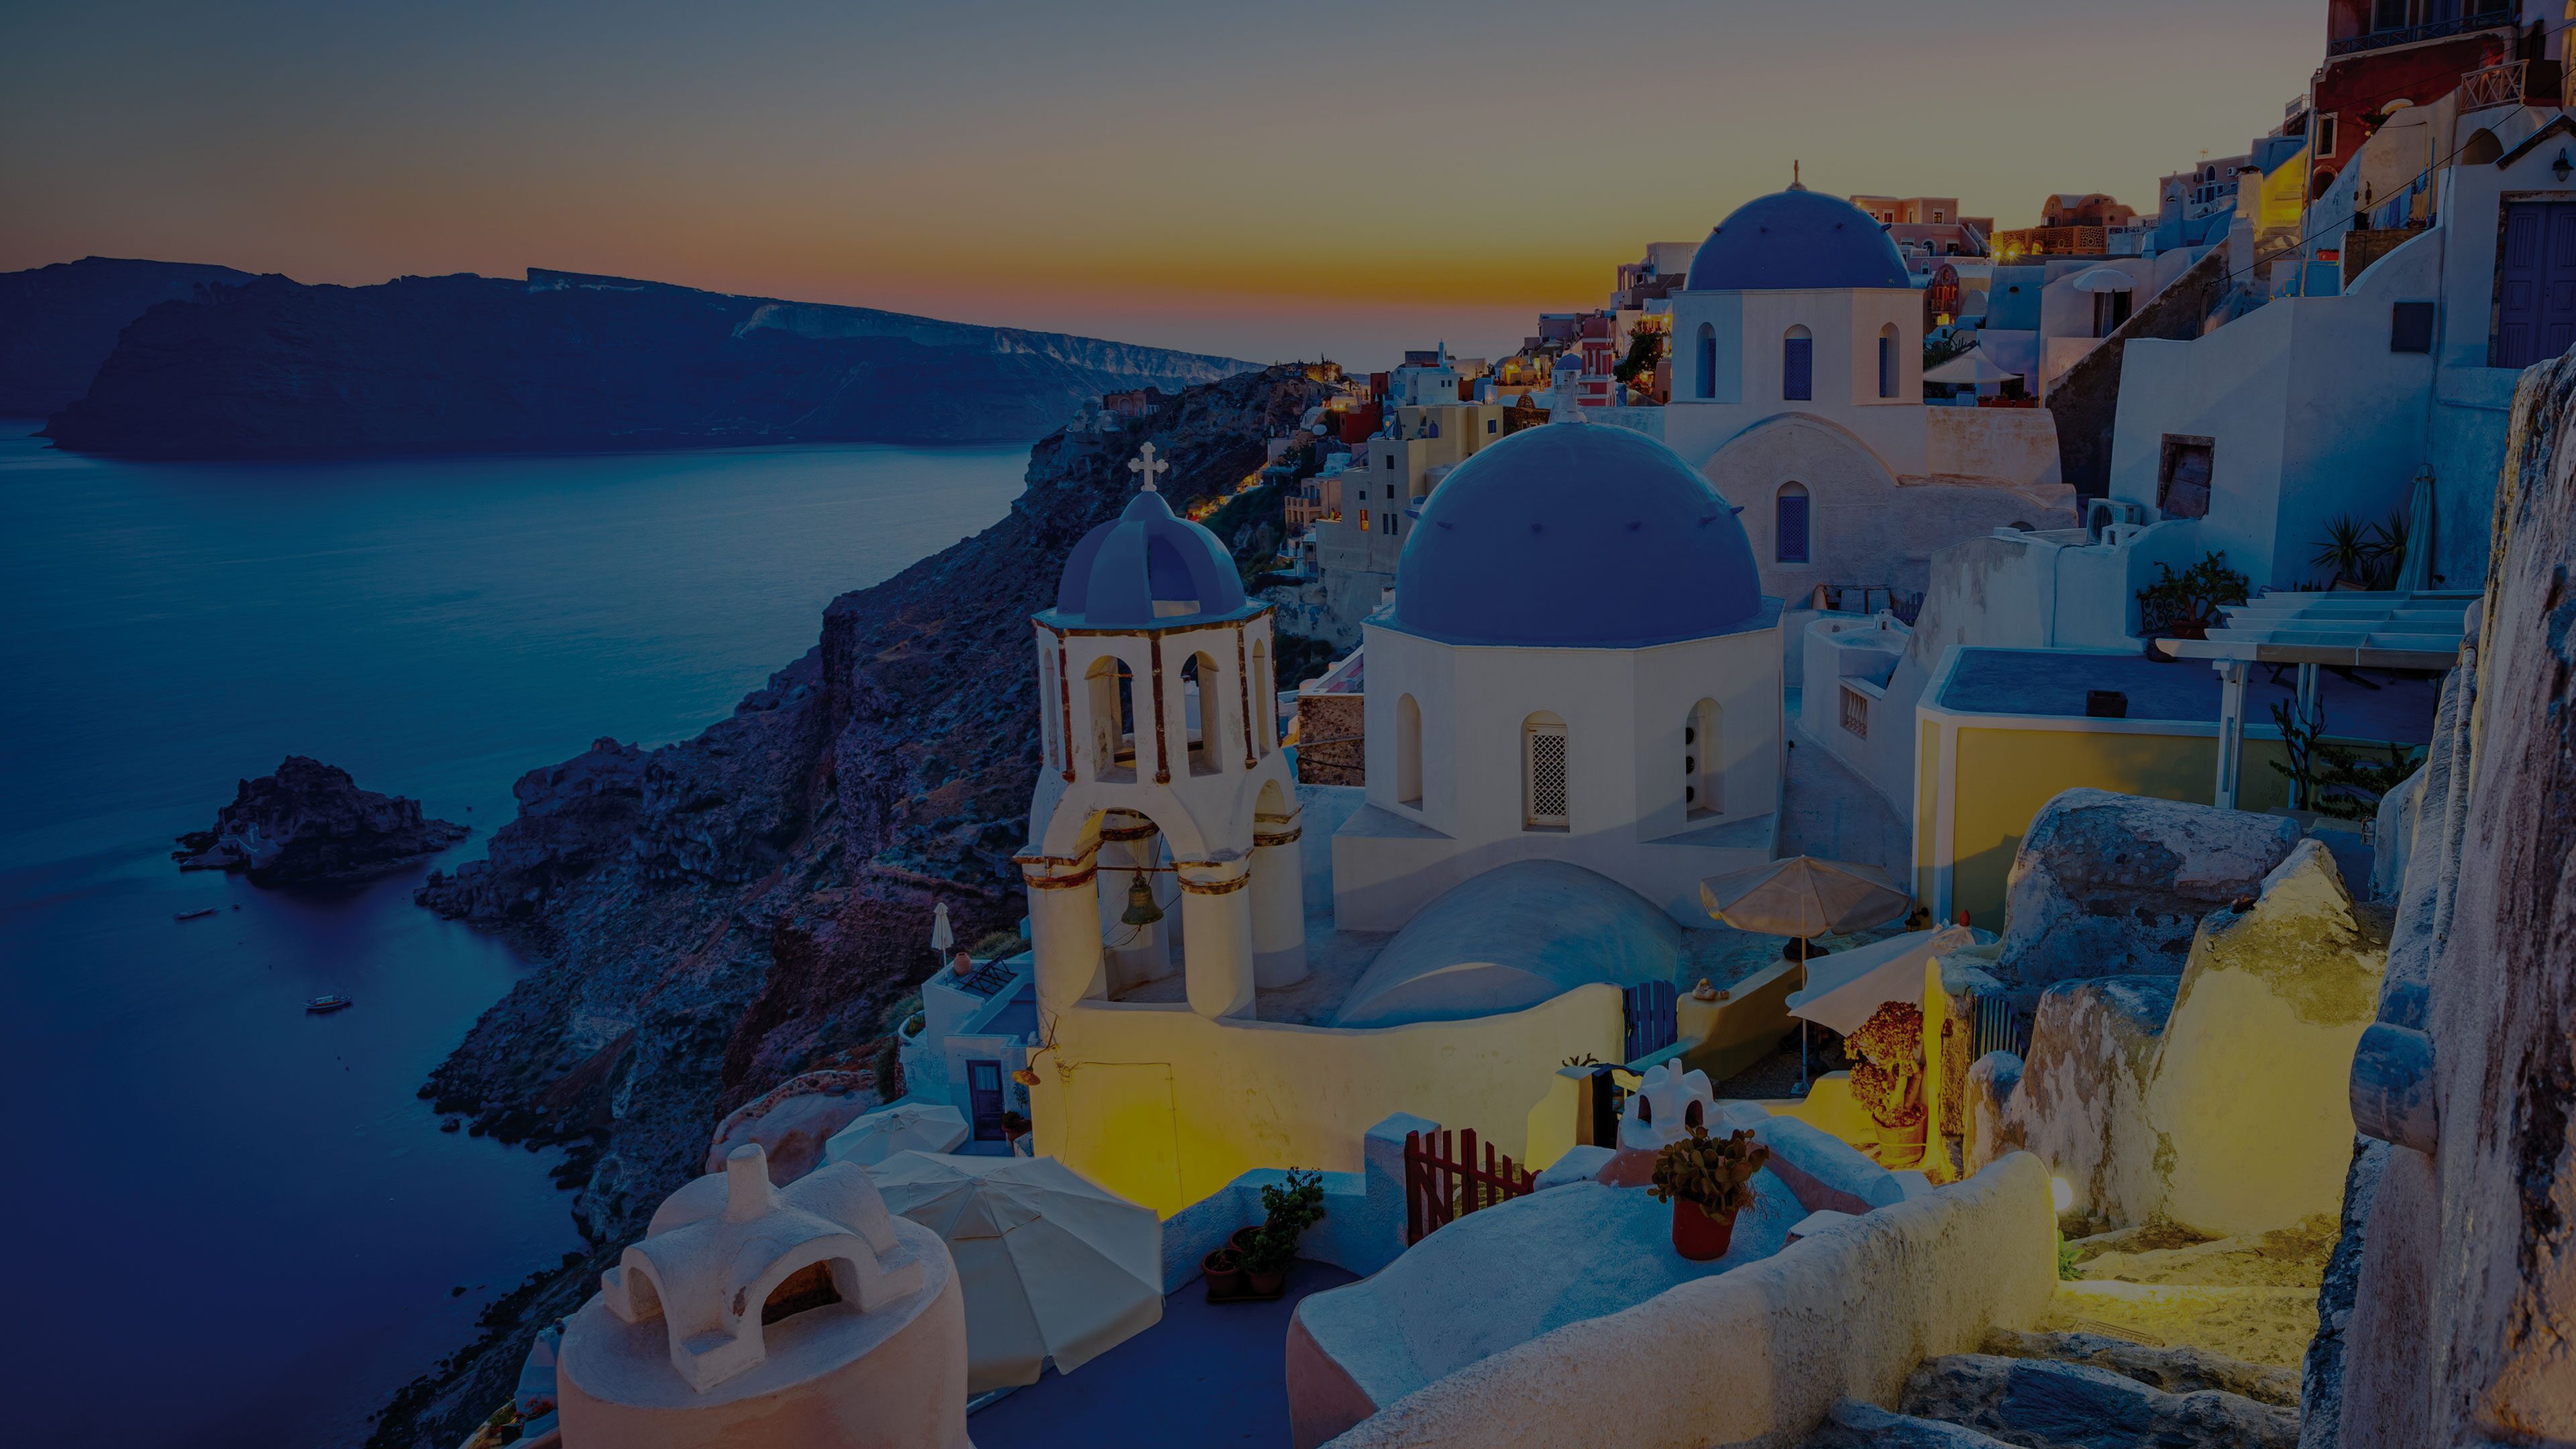 5 night greek island cruise